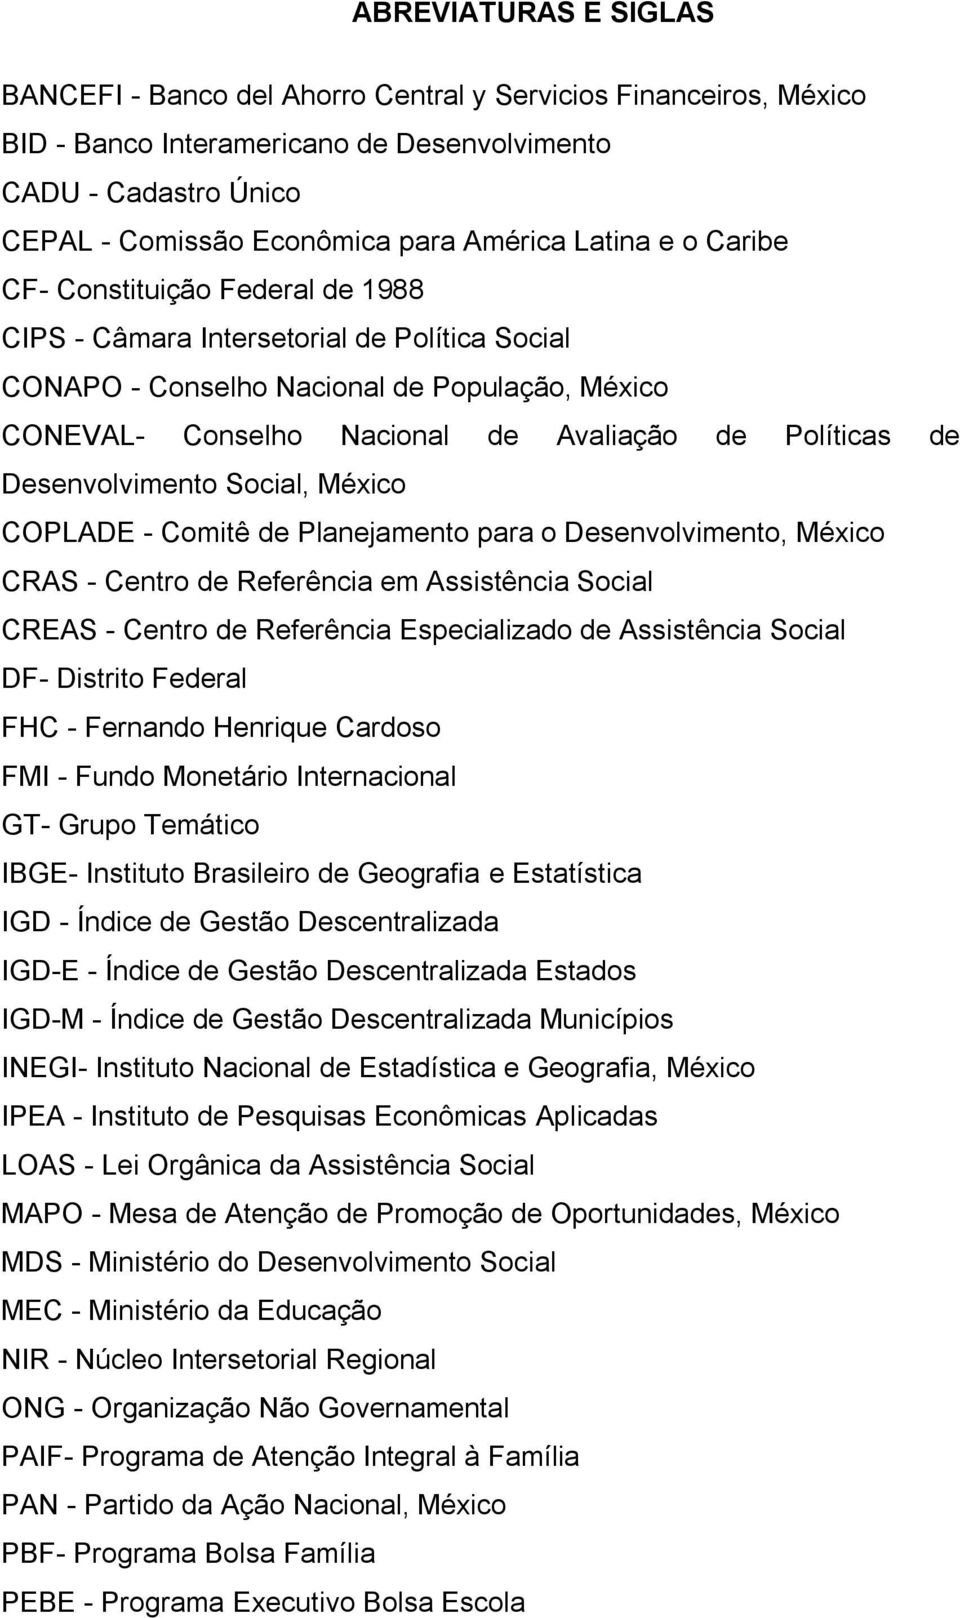 de Desenvolvimento Social, México COPLADE - Comitê de Planejamento para o Desenvolvimento, México CRAS - Centro de Referência em Assistência Social CREAS - Centro de Referência Especializado de